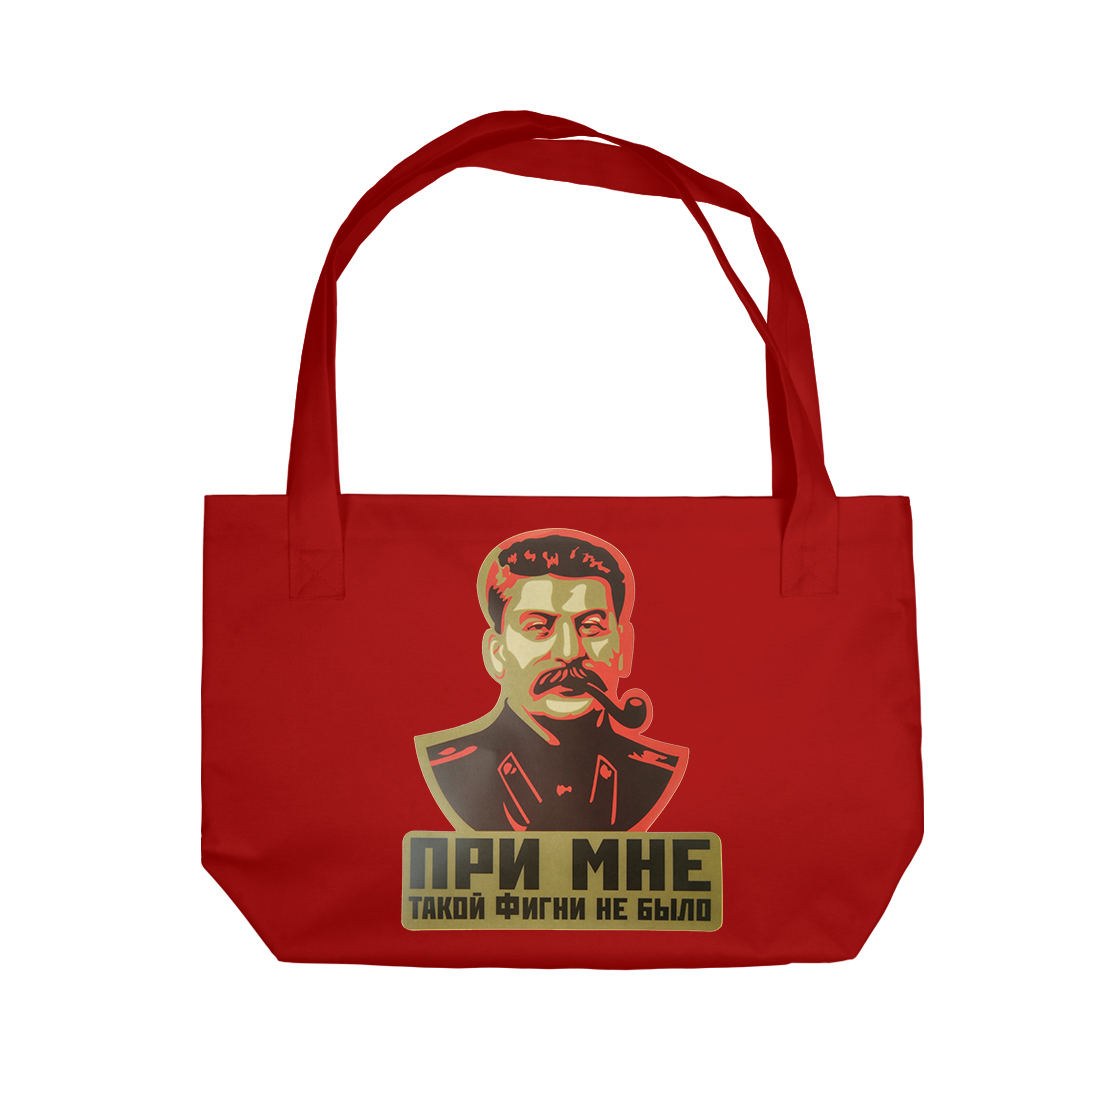 Пляжная сумка Иосиф Сталин SSS-132796-sup